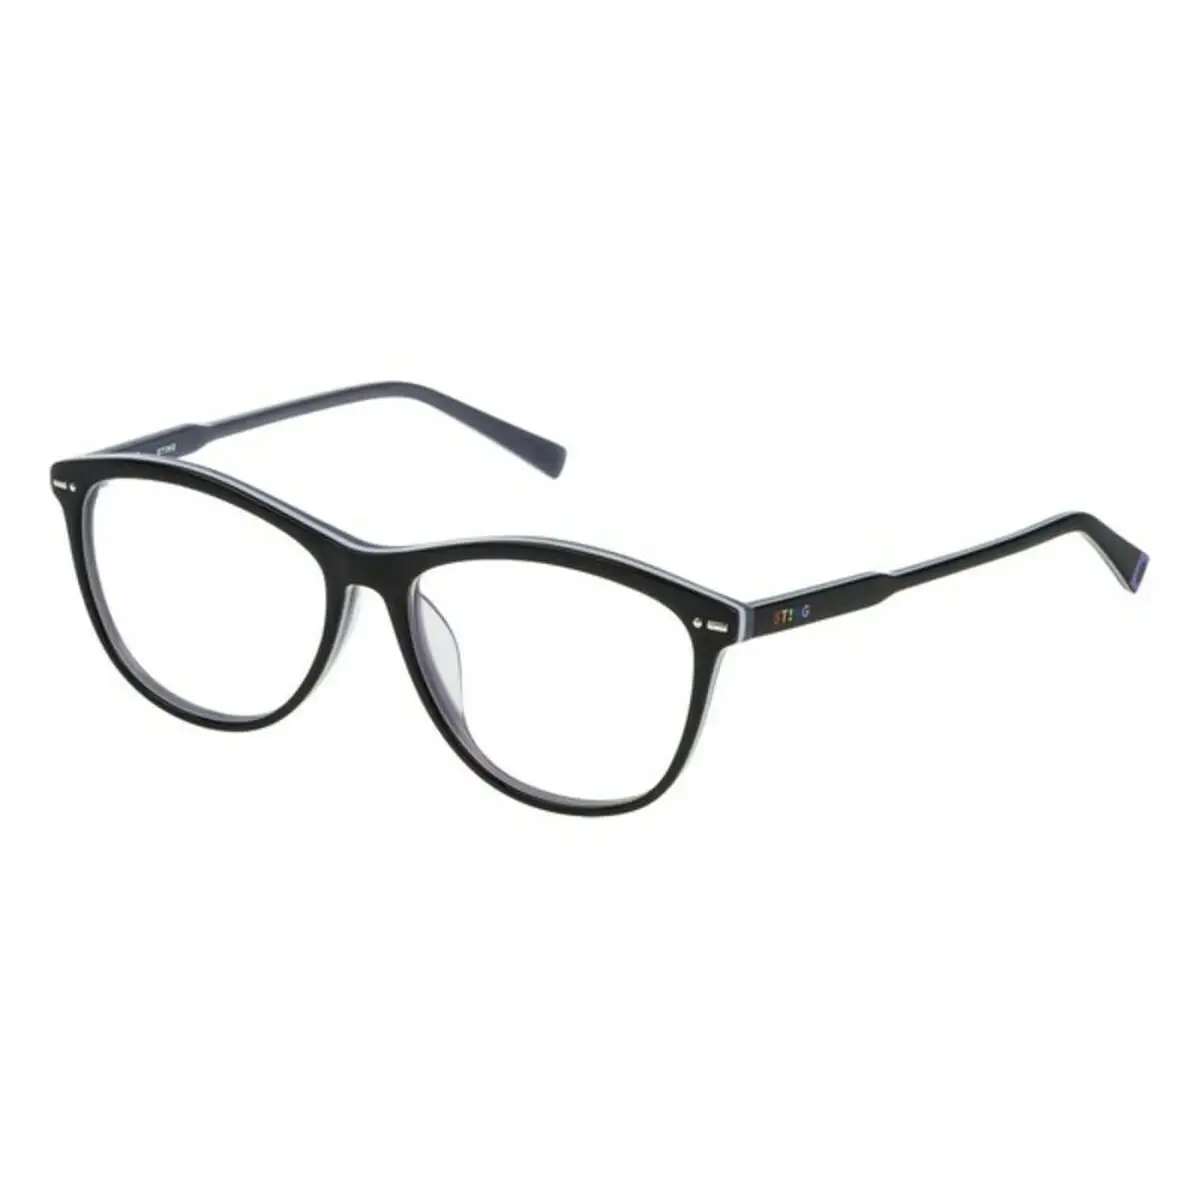 Monture de lunettes femme sting vst06454099q o 54 mm _8160. DIAYTAR SENEGAL - Votre Source de Découvertes Shopping. Découvrez des trésors dans notre boutique en ligne, allant des articles artisanaux aux innovations modernes.